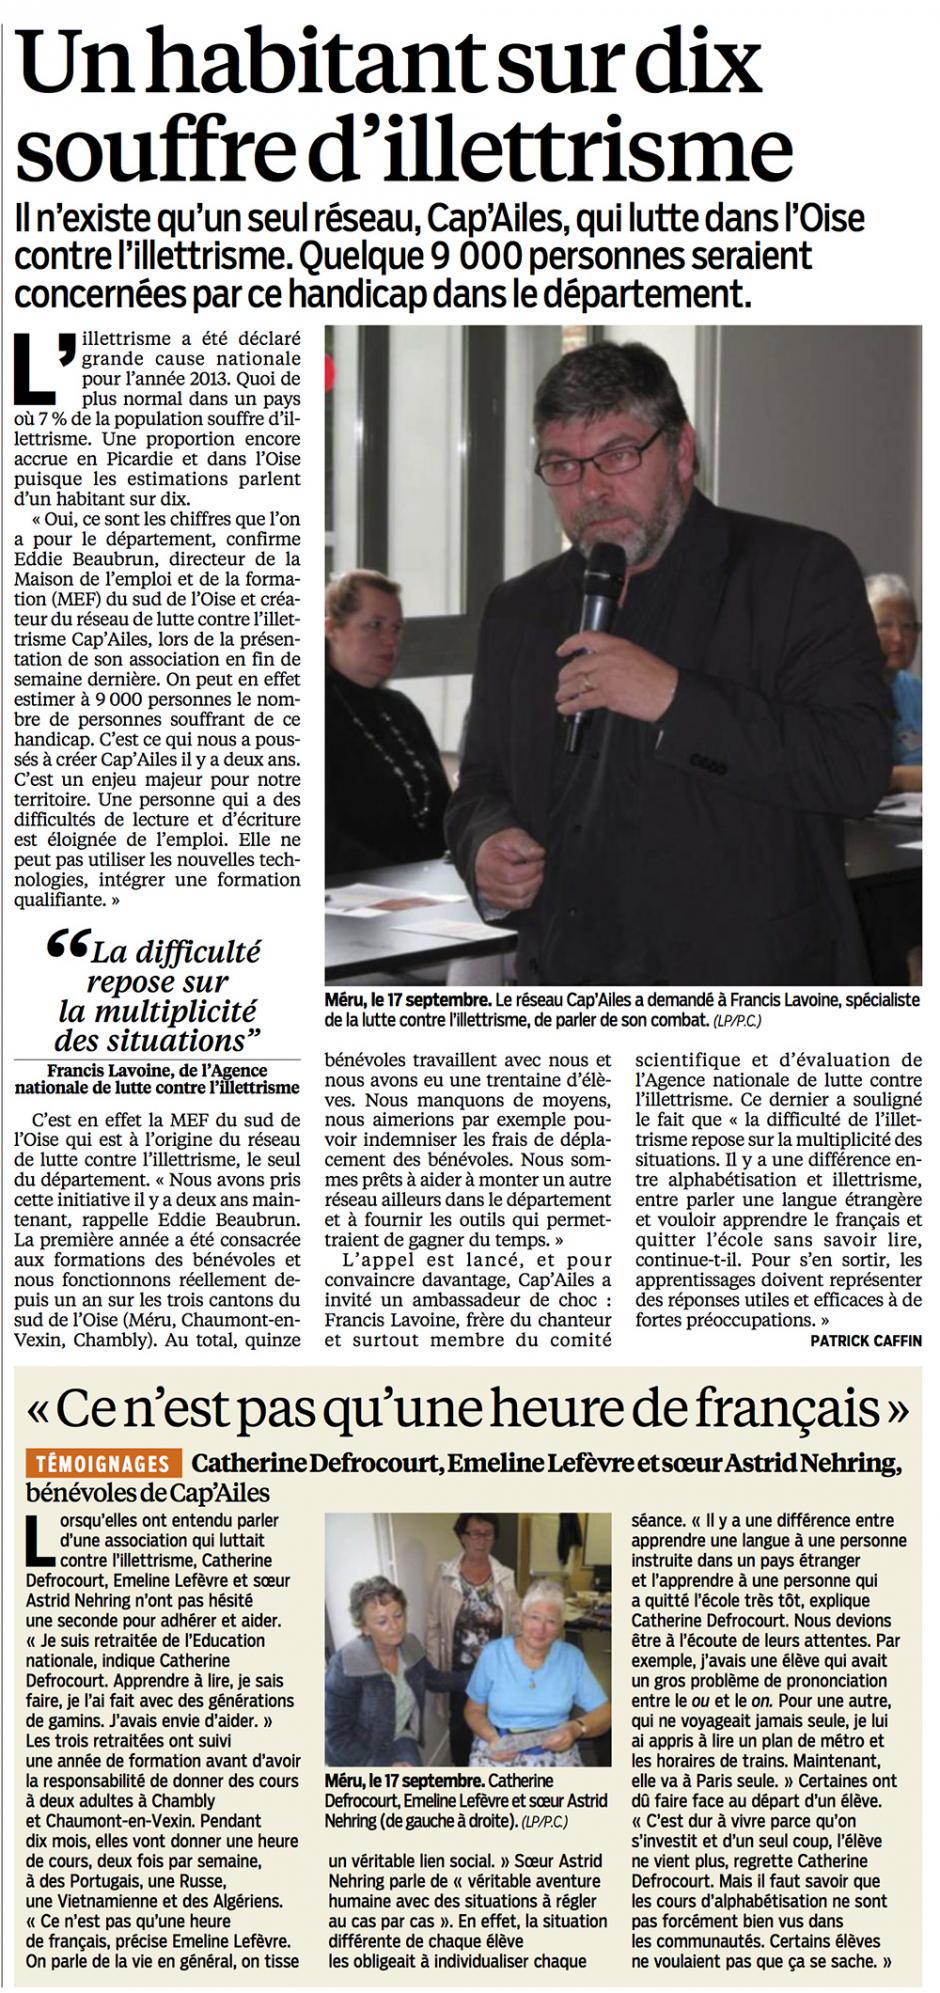 20130924-LeP-Oise-Un habitant sur dix souffre d'illettrisme